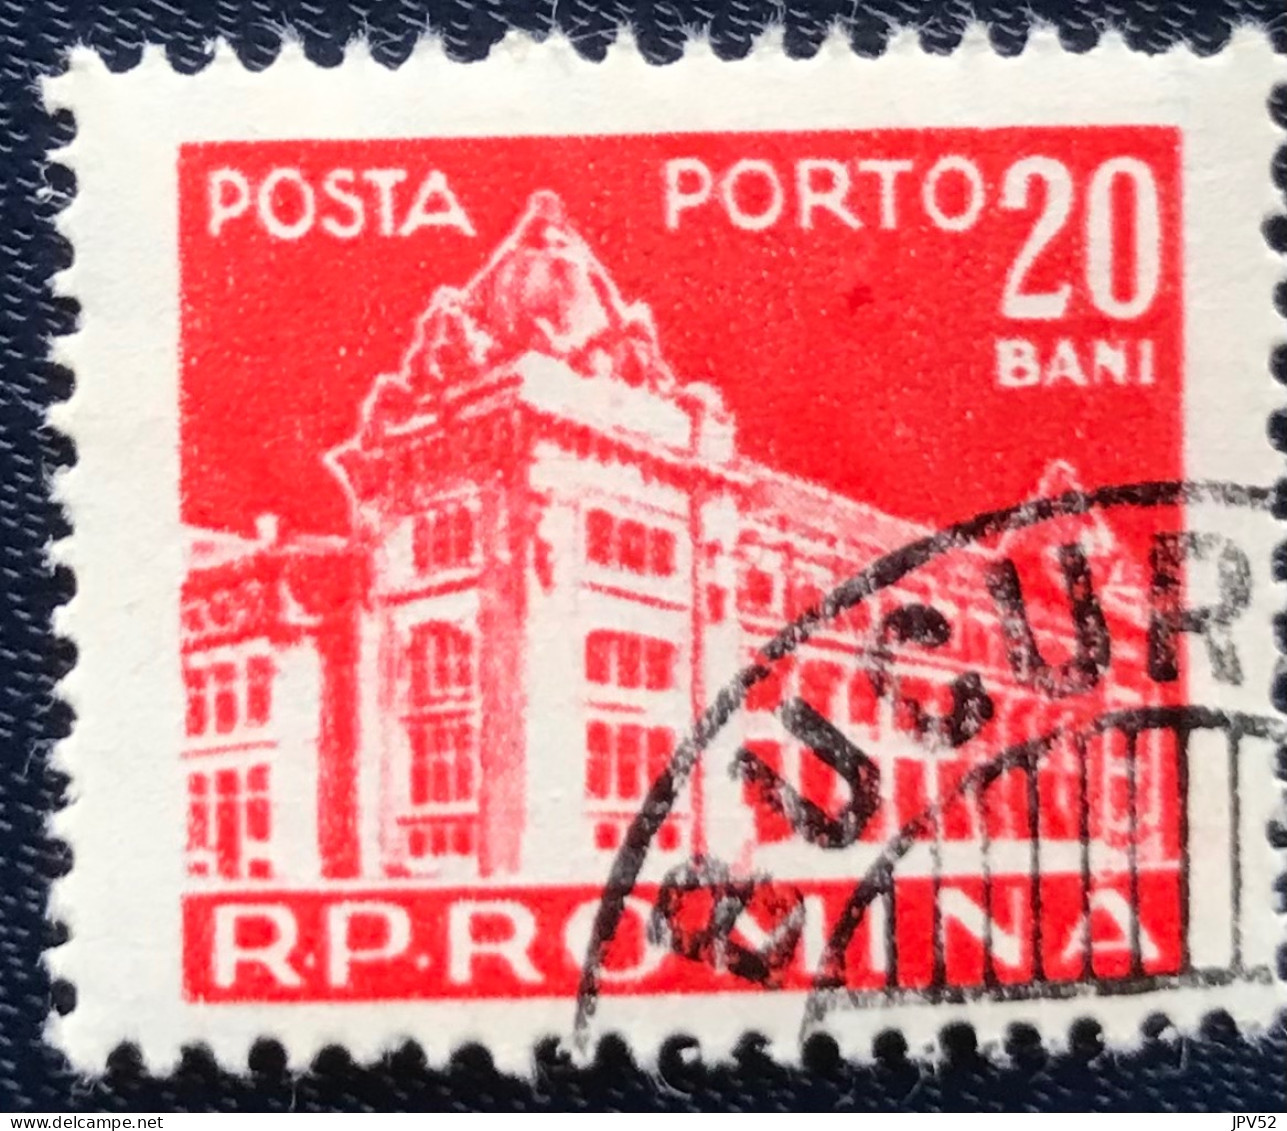 Romana - Roemenië - C14/54 - 1957 - (°)used - Michel 104 - Postkantoor - Postage Due